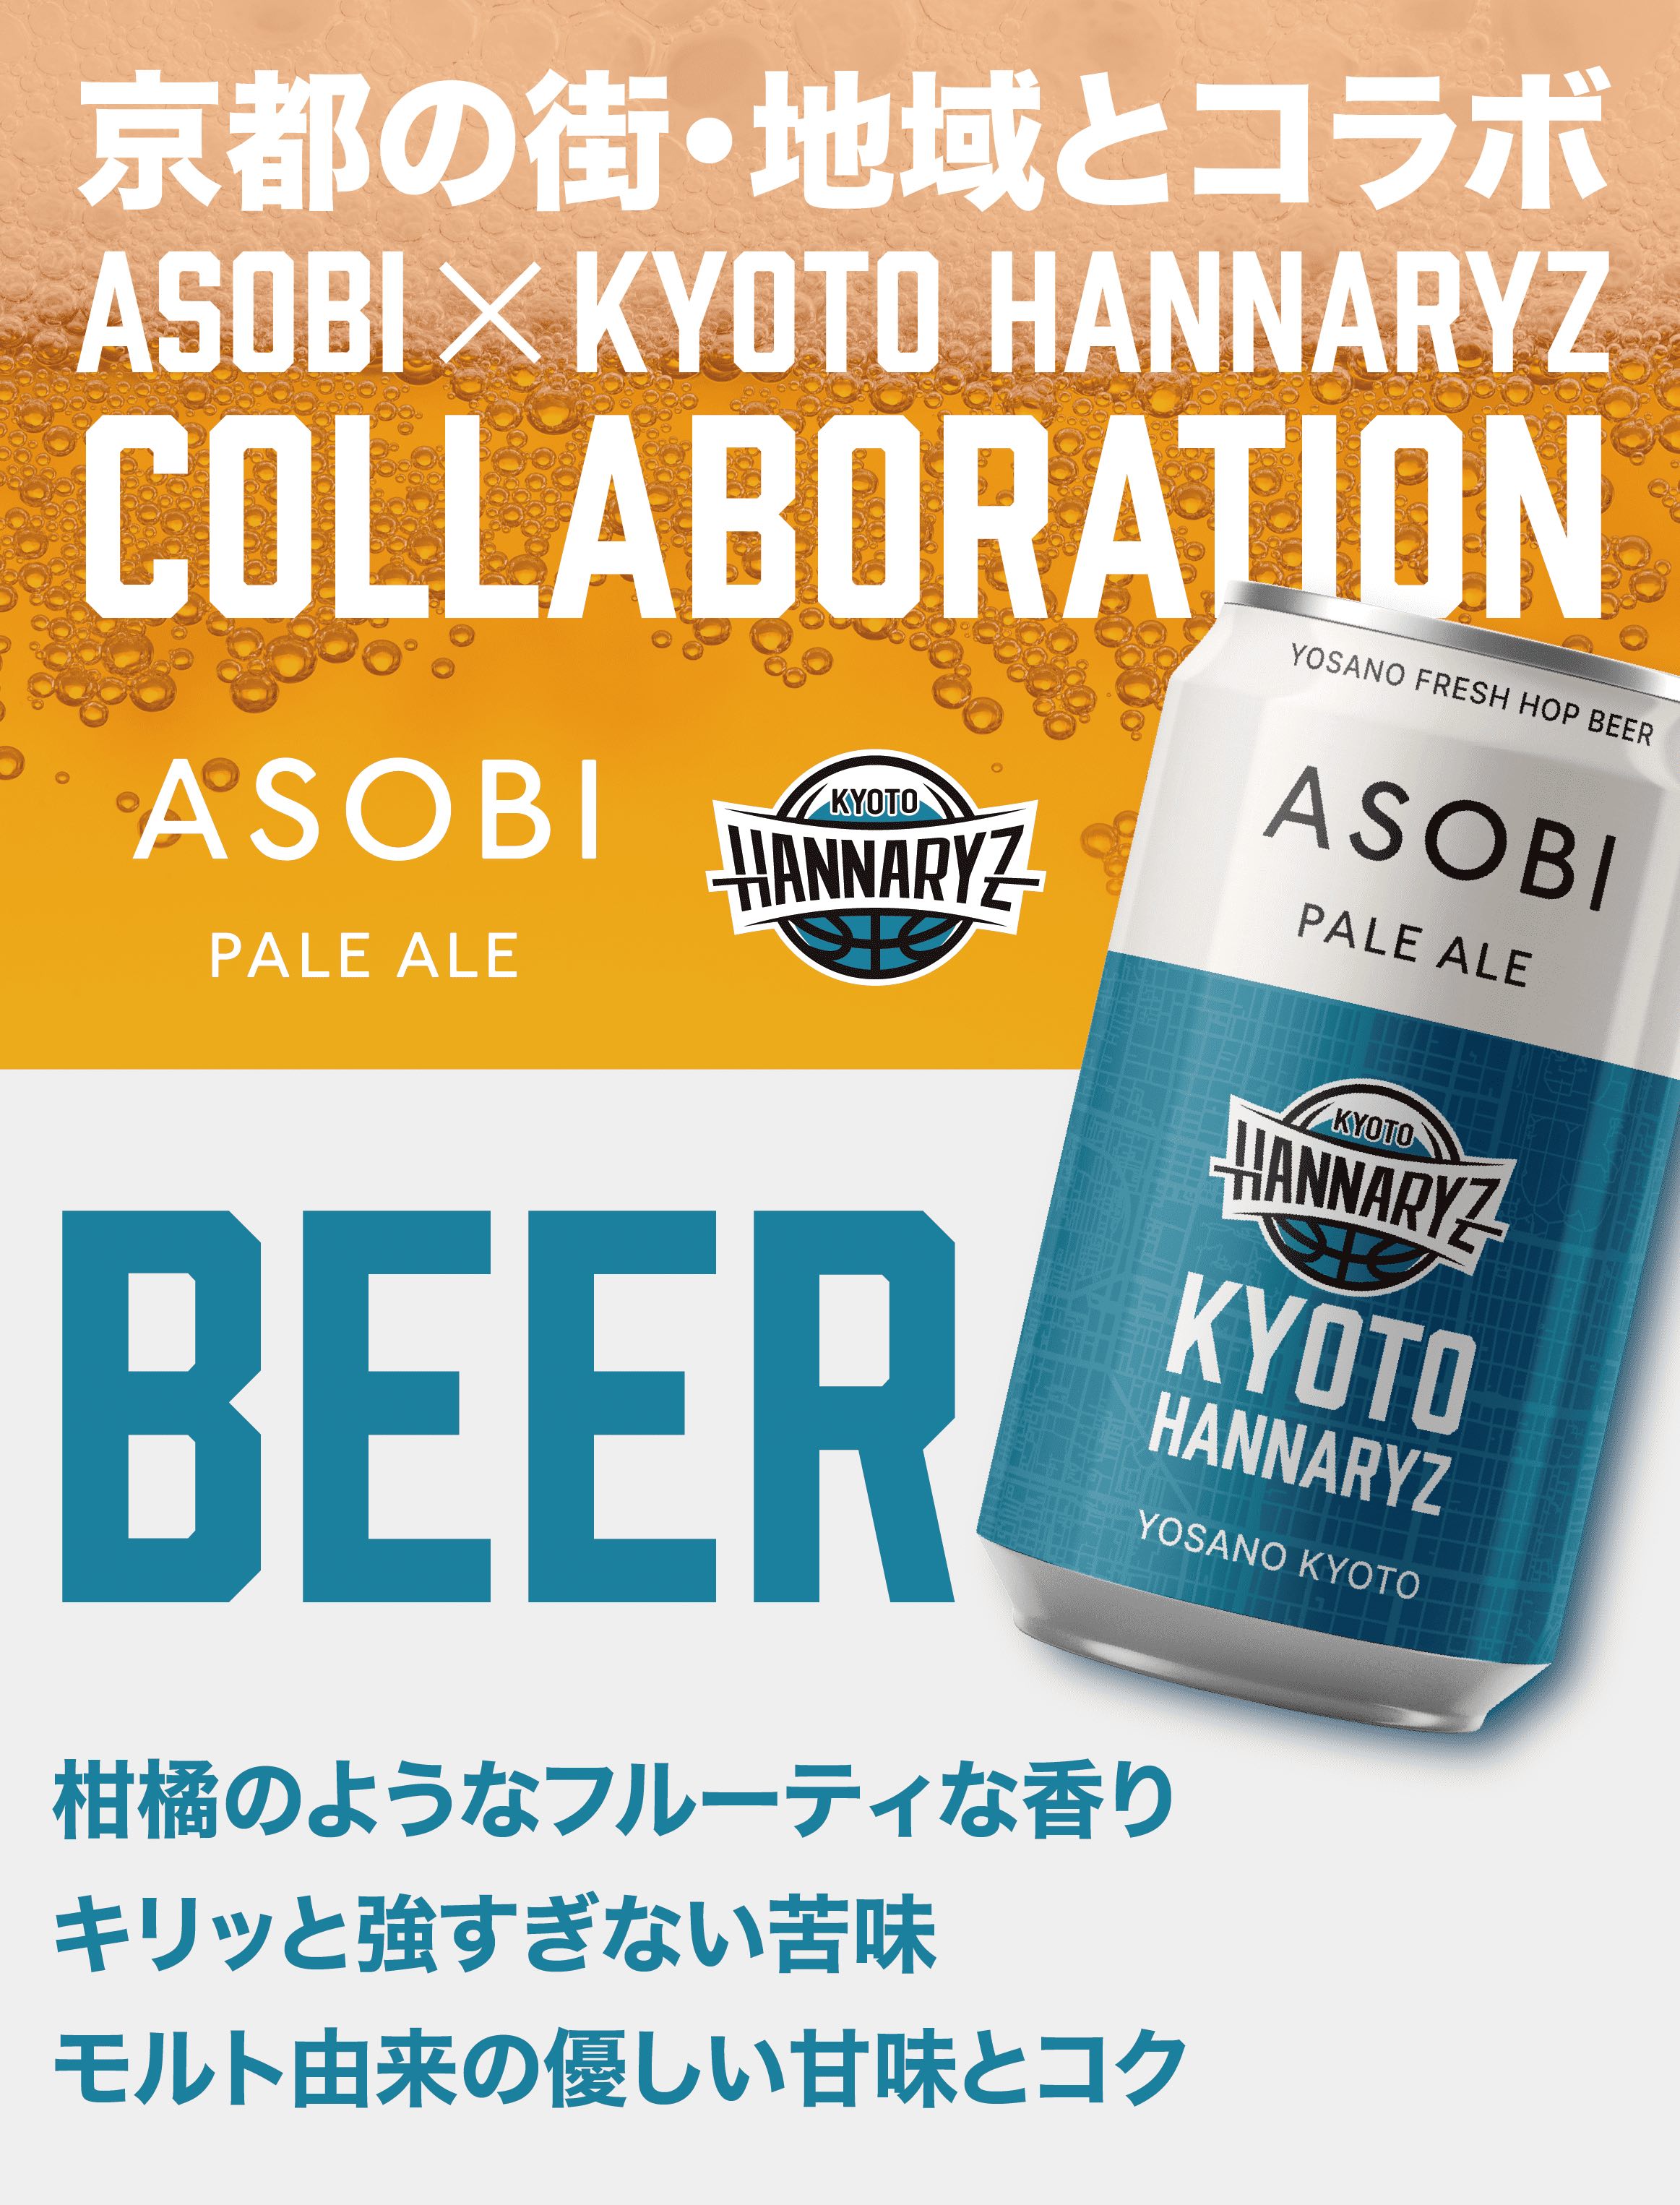 ASOBI - 京都ハンナリーズ COLLABORATION LABEL ビール 6本セット【送料無料】